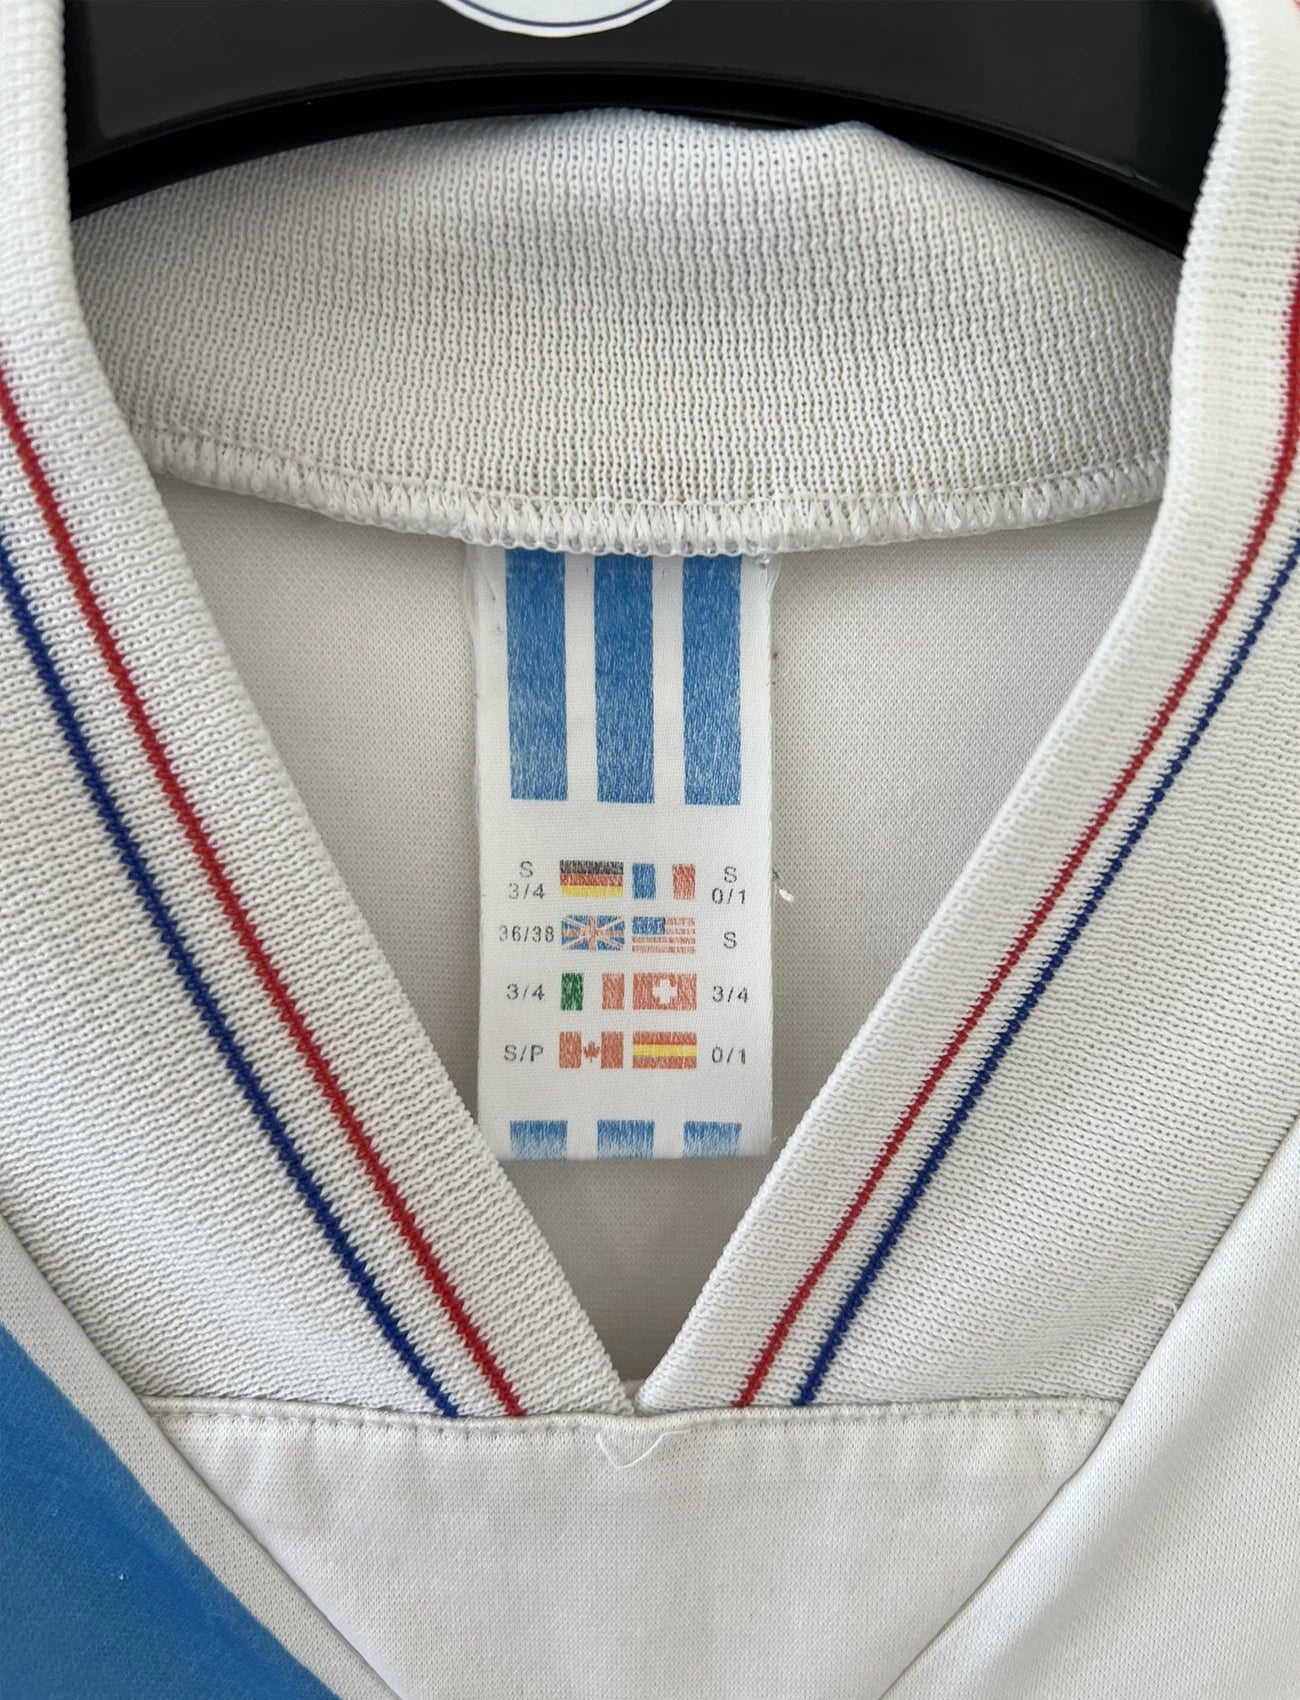 Maillot de foot vintage de l'OM de la saison 1991/1992. Il s'agit du maillot domicile blanc et bleu. On peut retrouver l'équipementier adidas et le sponsor panasonic. Il s'agit d'un maillot authentique d'époque.